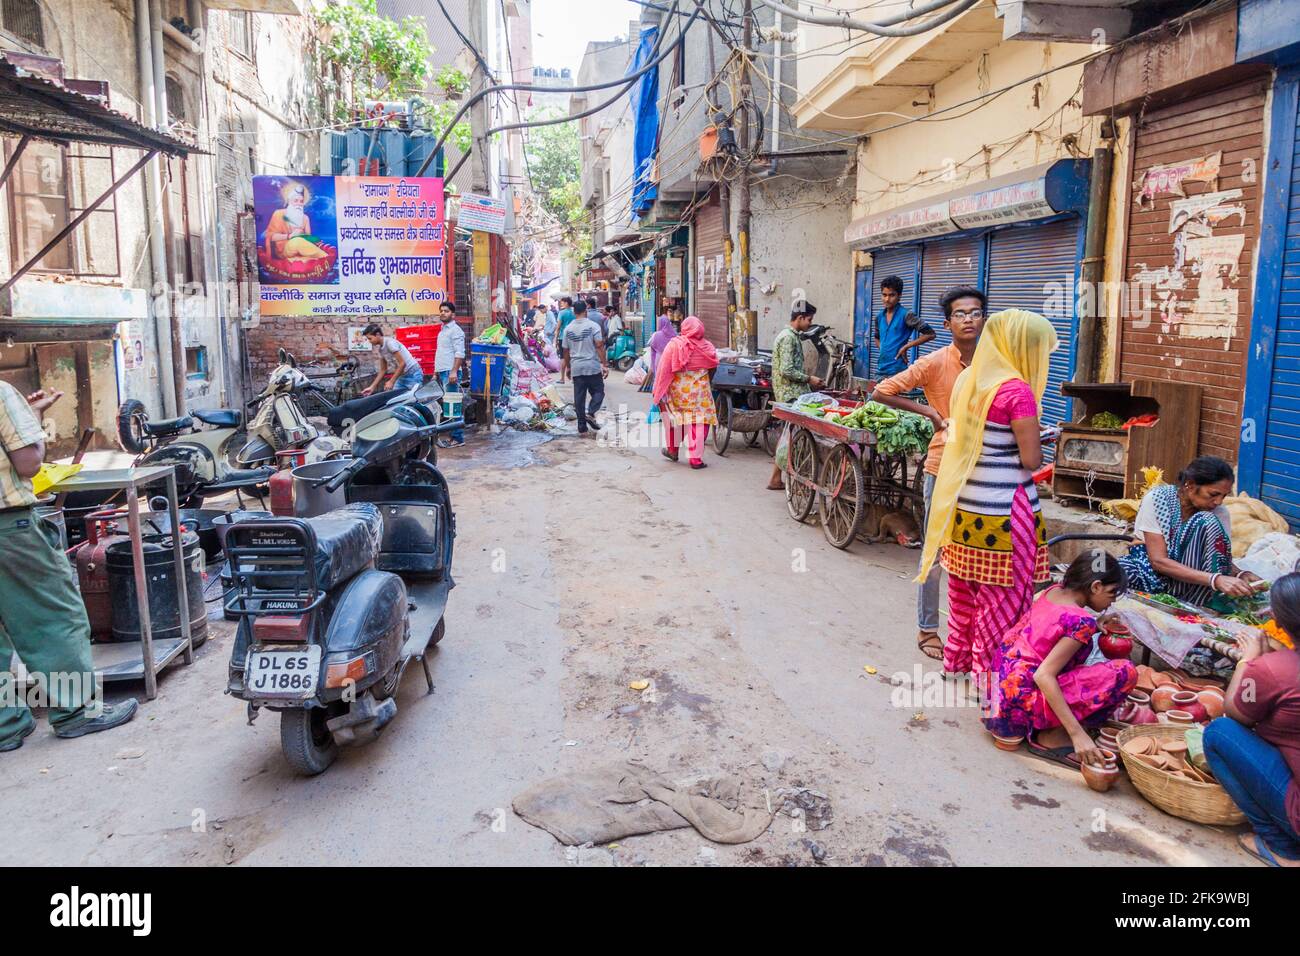 DELHI, INDE - 22 OCTOBRE 2016 : vue d'une ruelle étroite dans le centre de Delhi, Inde Banque D'Images